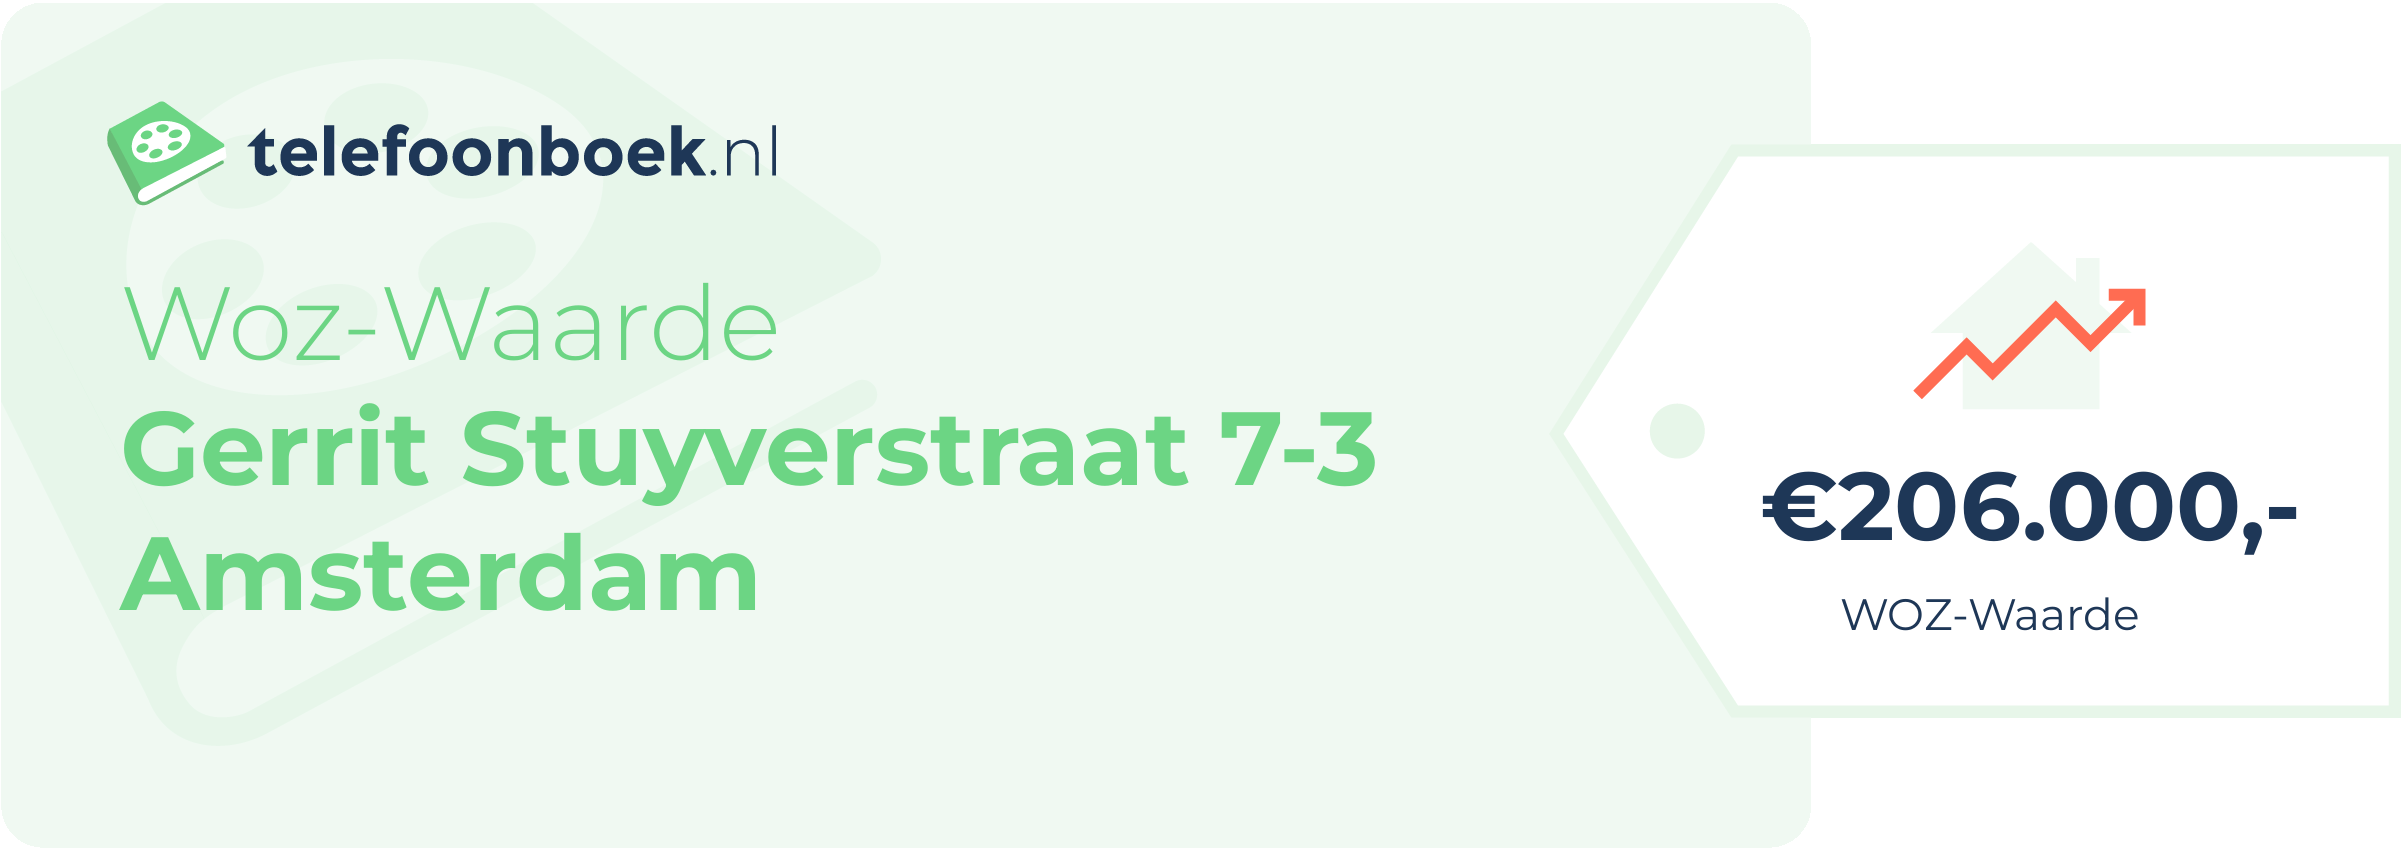 WOZ-waarde Gerrit Stuyverstraat 7-3 Amsterdam